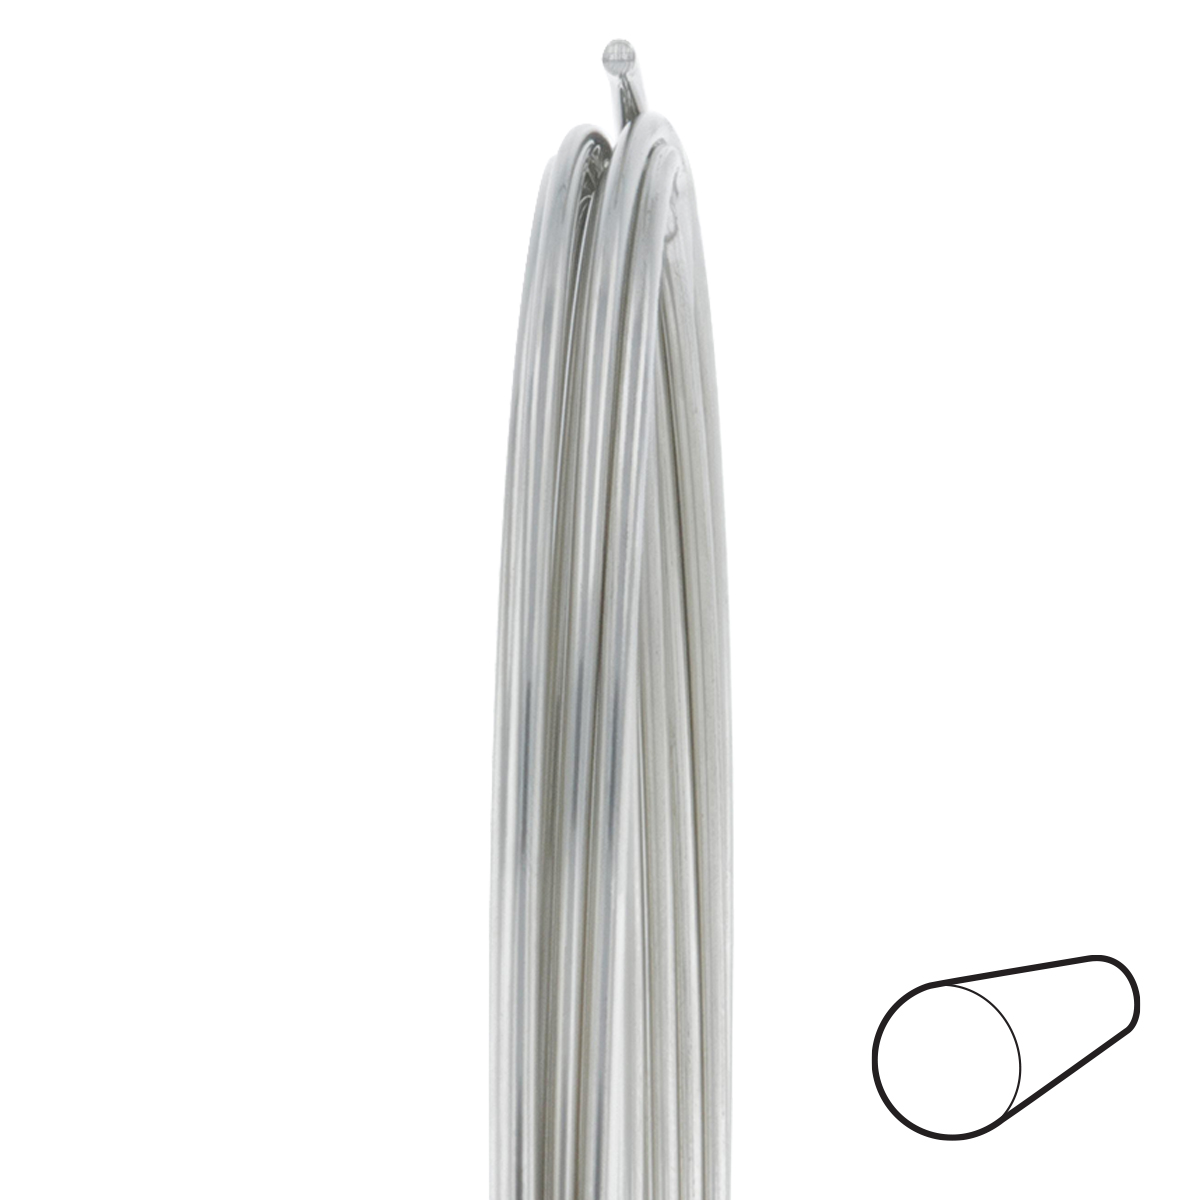 18 Gauge Round Dead Soft Nickel Silver Wire: Wire Jewelry, Wire Wrap  Tutorials